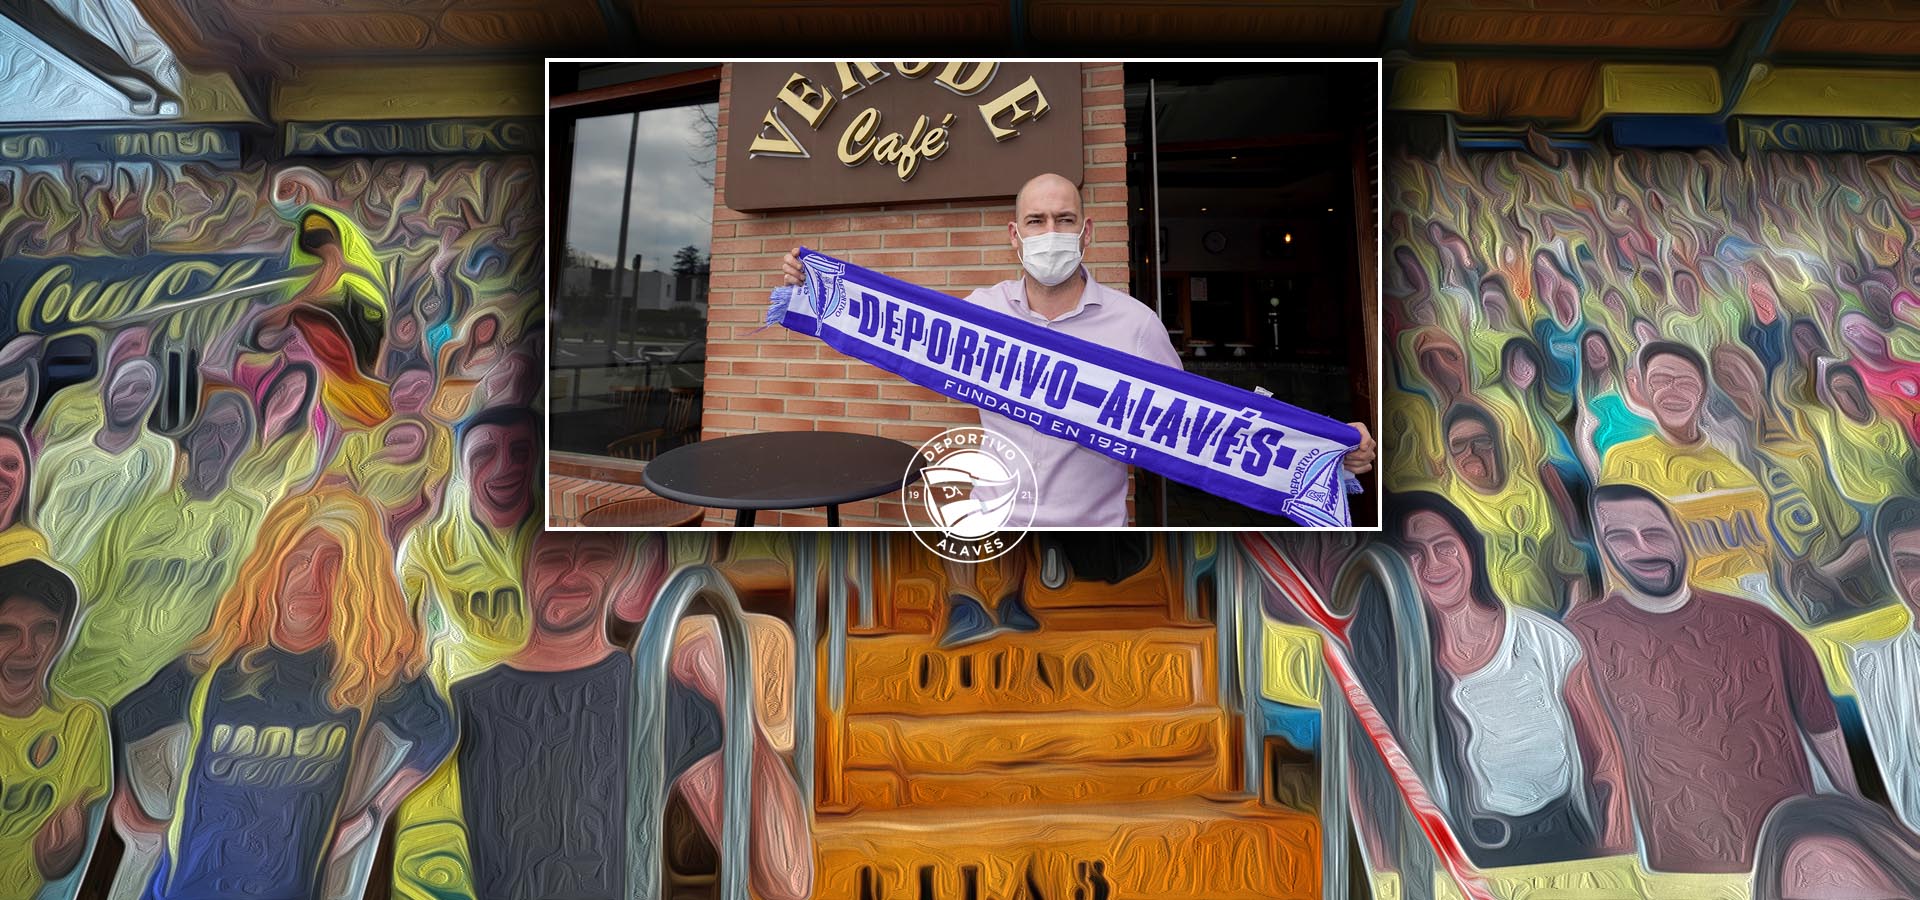 Jito, un trotamundos del fútbol agobiado con su bar en Vitoria por culpa de la COVID-19